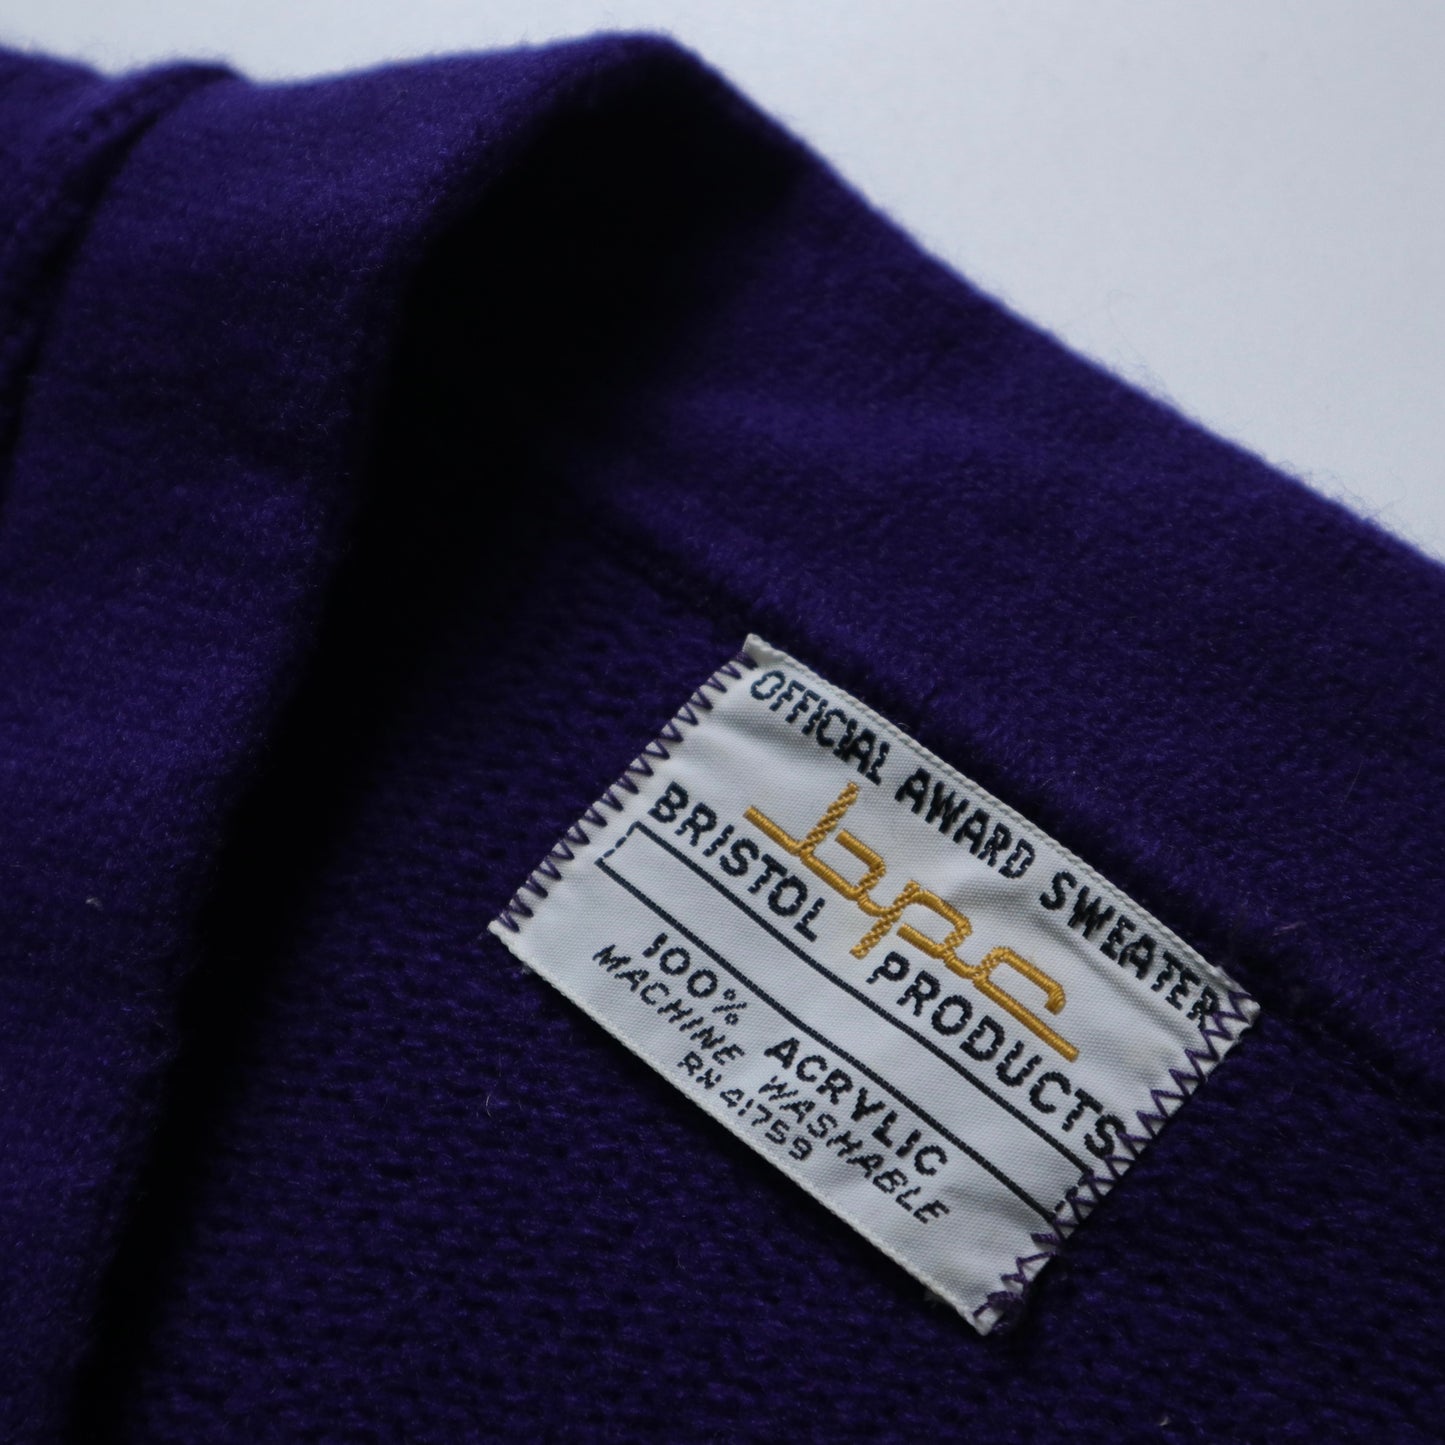 1970年代 Varsity Sweater パッチ「T」 パープル V ネック キャンパス セーター